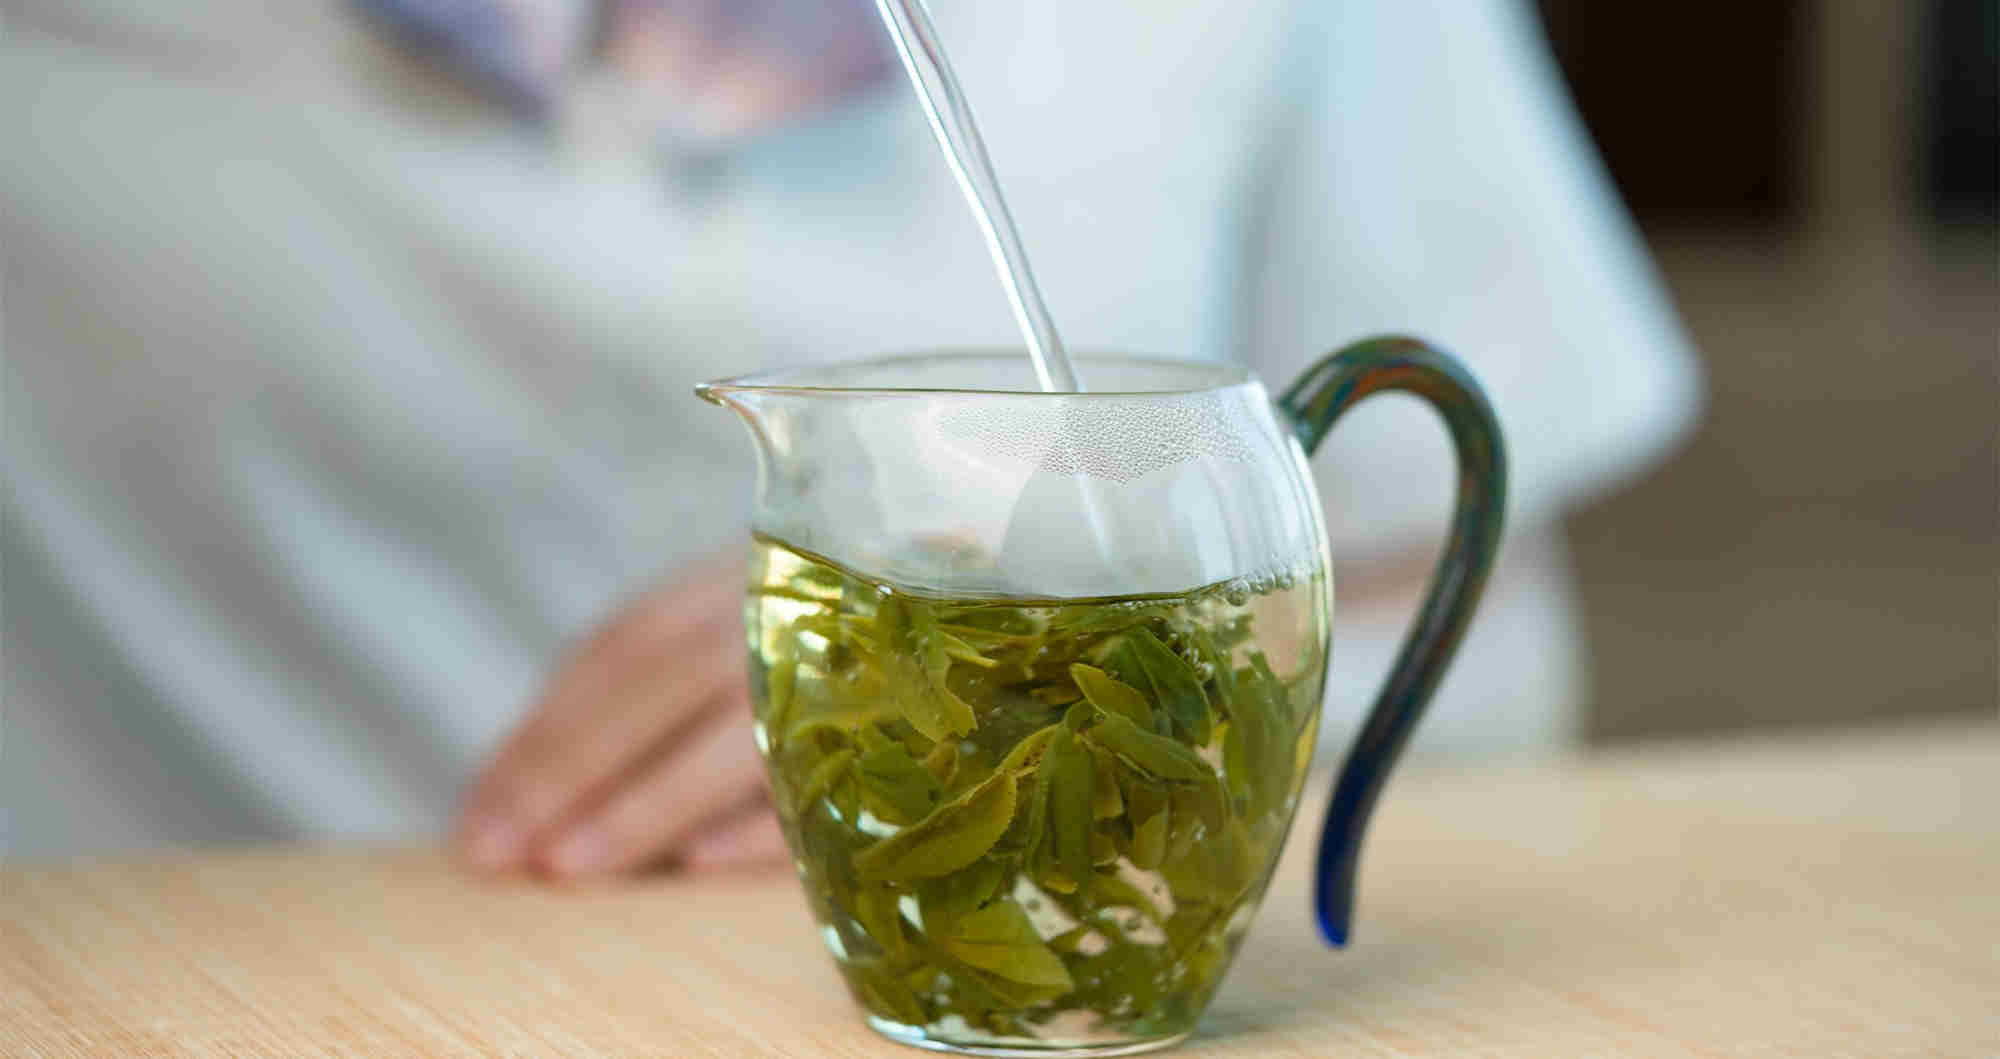 “中国十大名茶”之一的六安瓜片，为何如此特别？